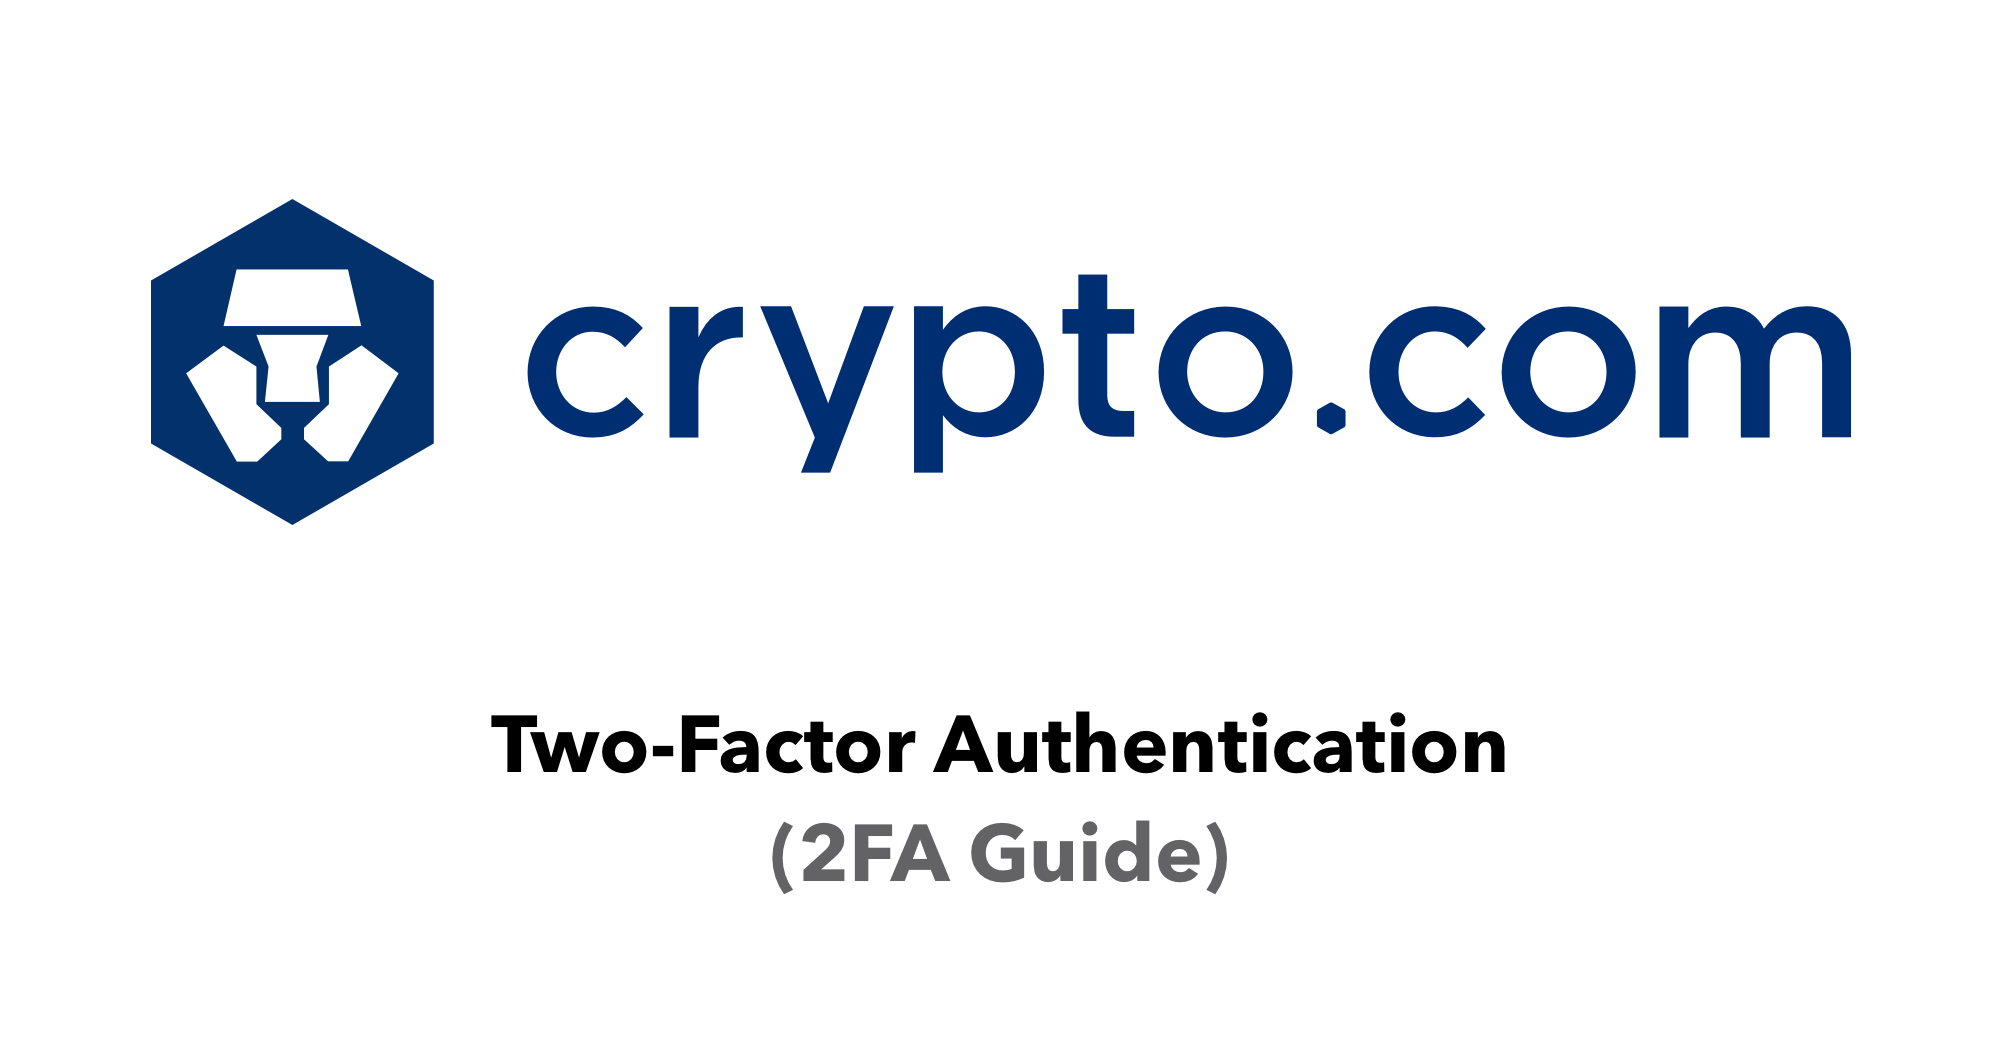 how do i get my 2fa code for crypto.com